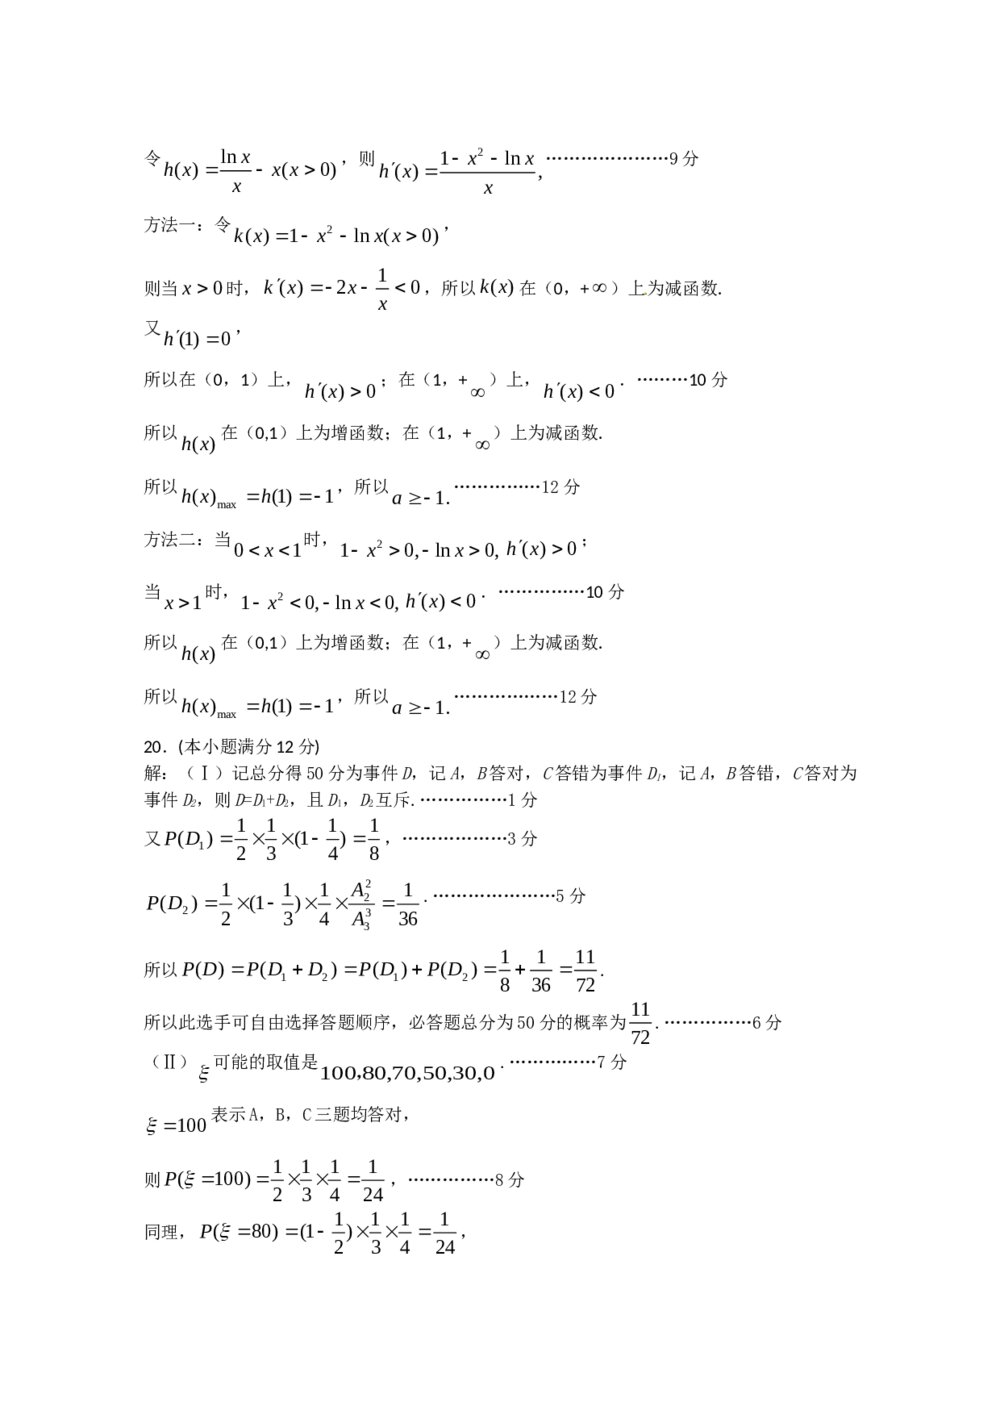 2011年石家庄高三一模拟数学(理科)试题试卷+答案10